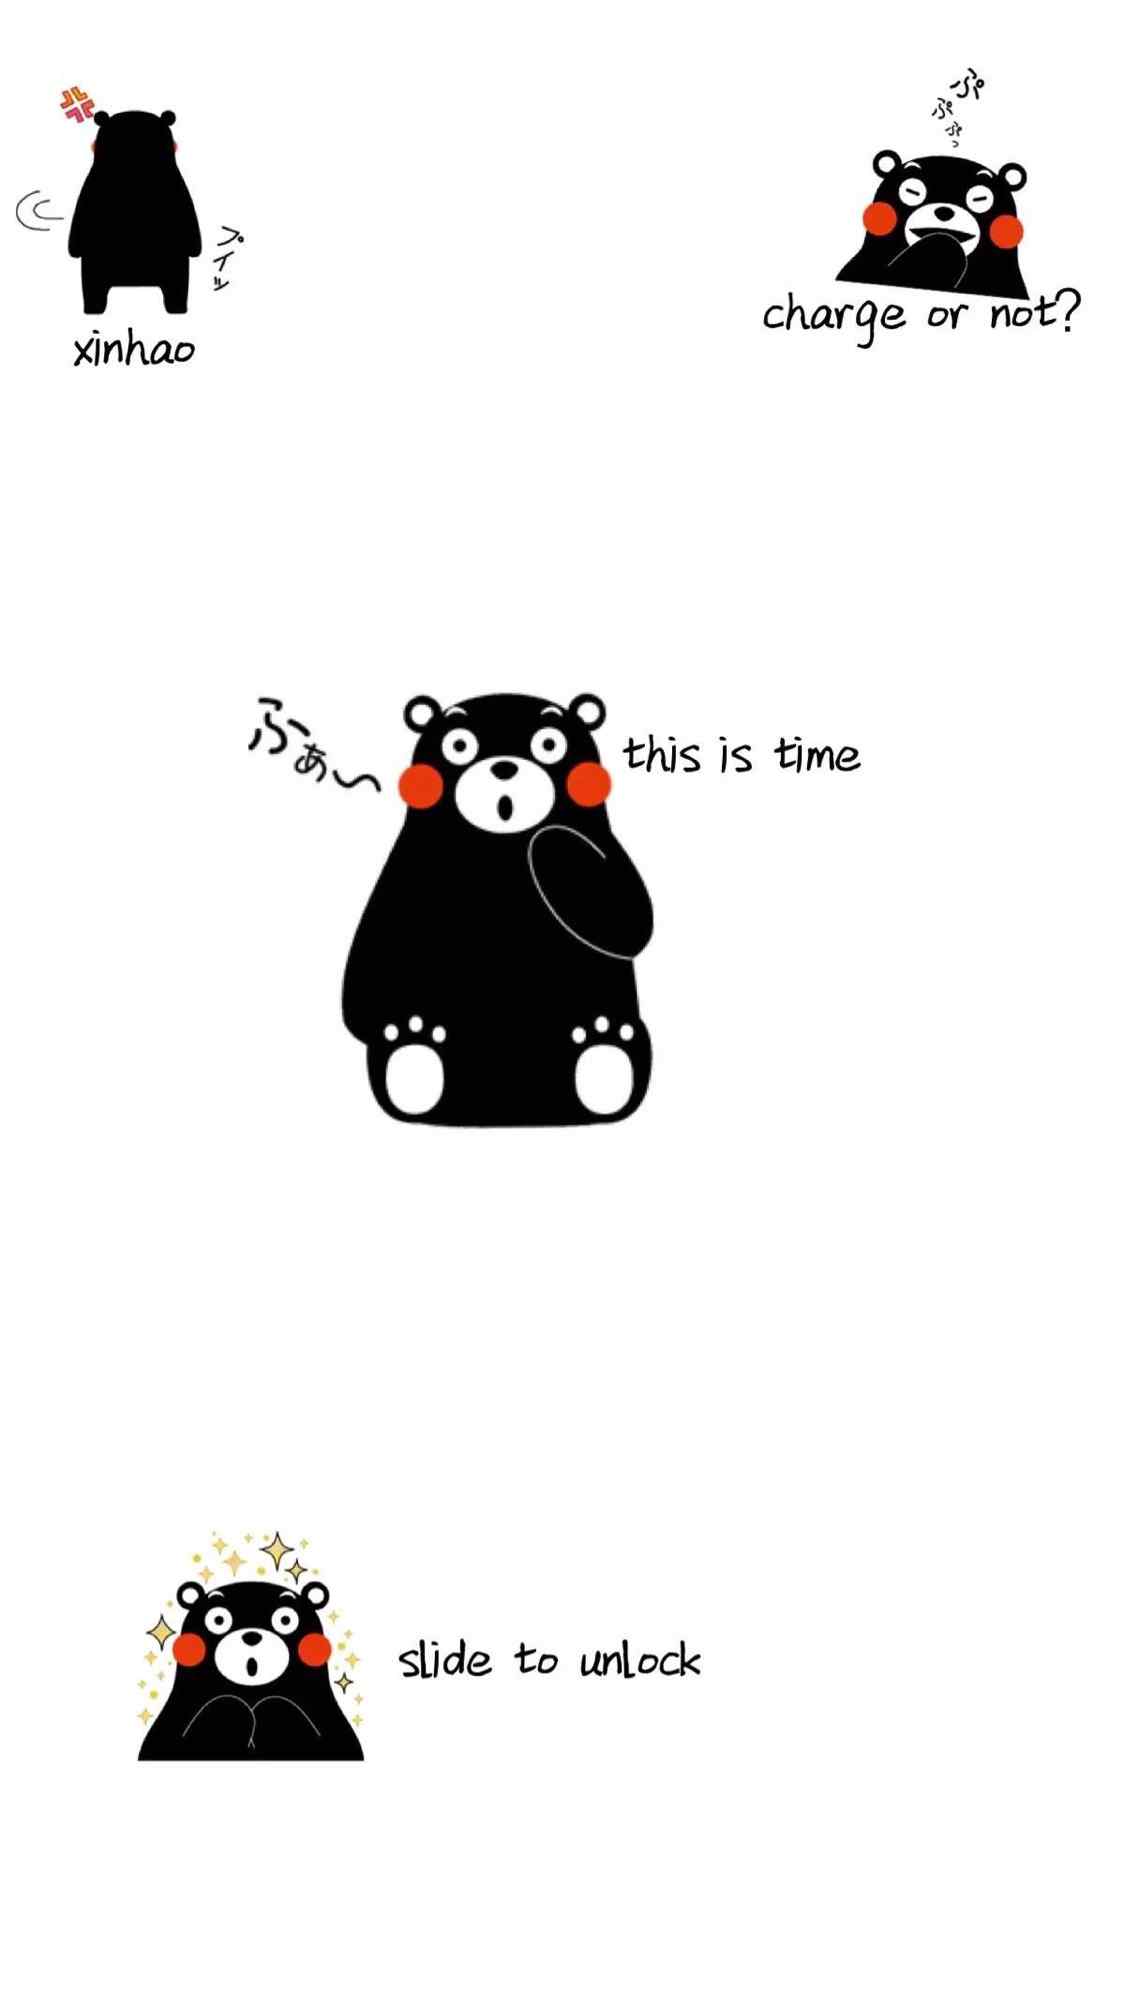 可爱的熊本熊创意自制手机壁纸